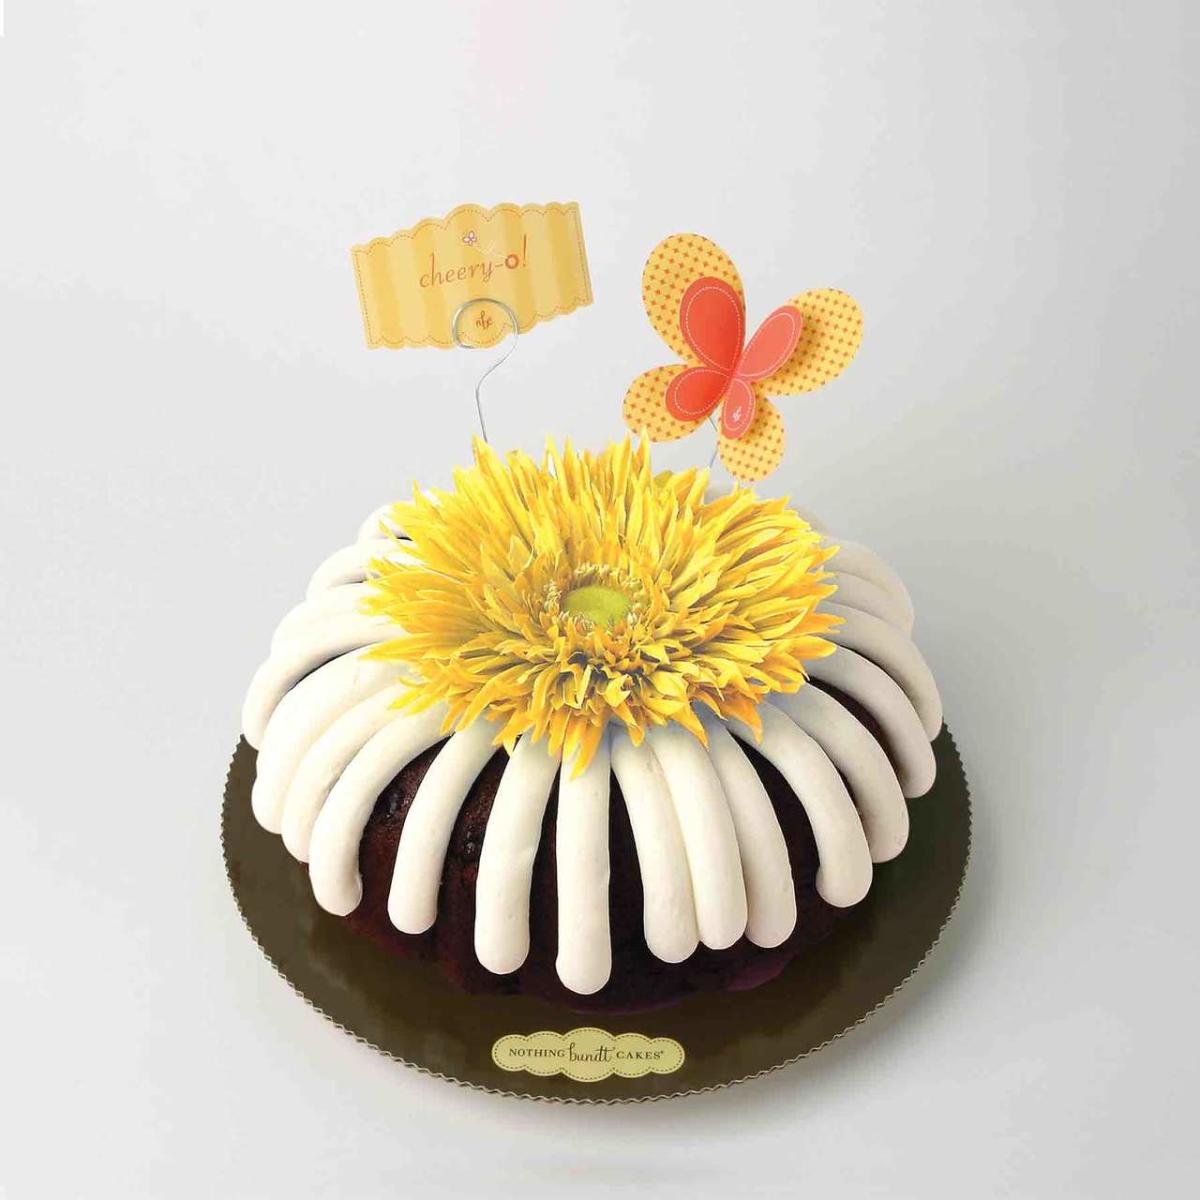 Bakery Fresh Goodness Limited Edition Birthday Bundt Cake, 33 oz - Baker's